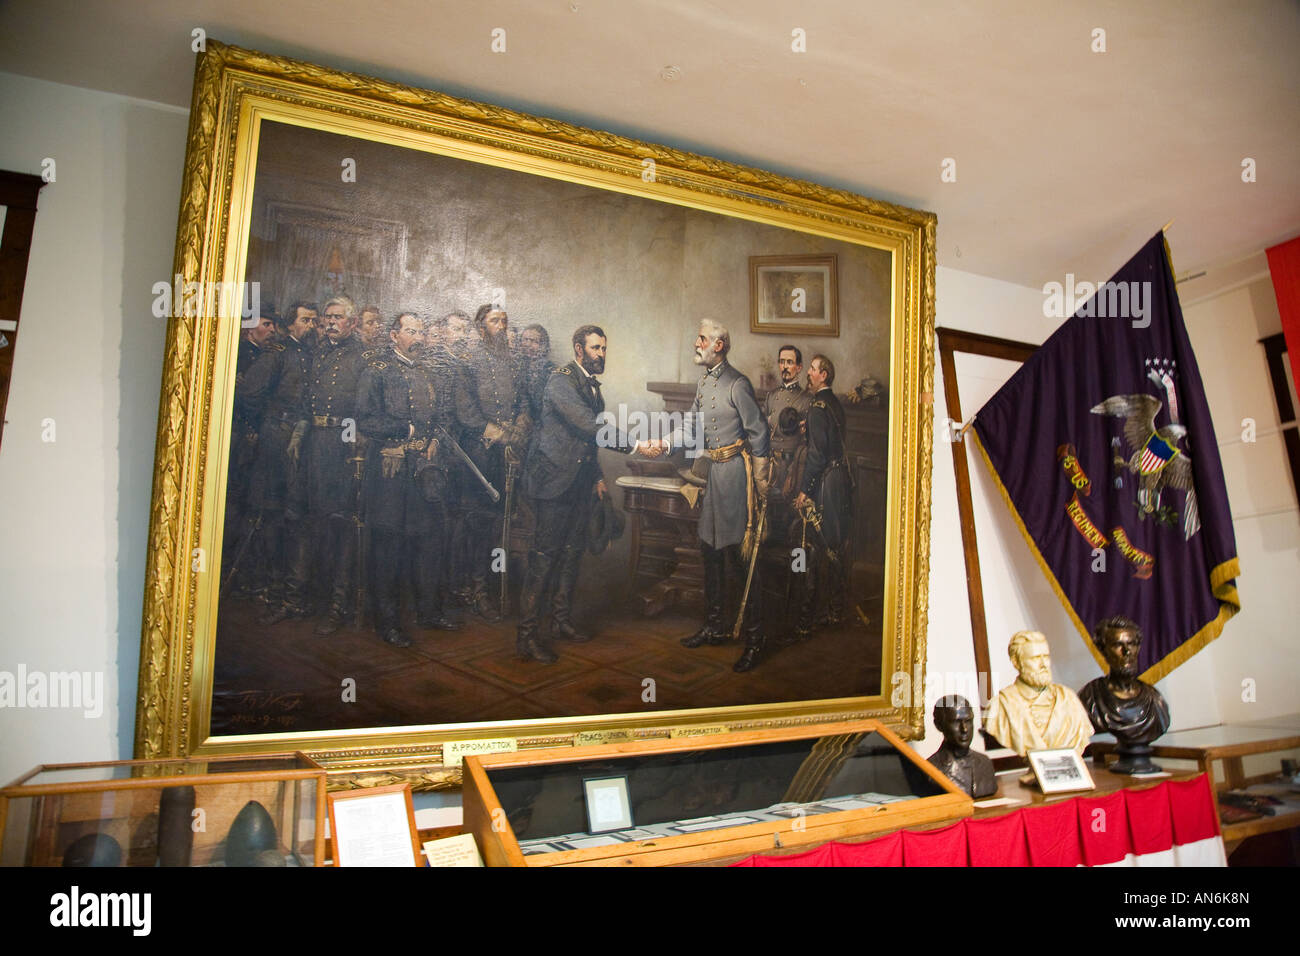 ILLINOIS Galena Frieden in Union von Thomas Nast Gemälde zeigt die Übergabe des Robert E Lee an Ulysses S Grant Stockfoto